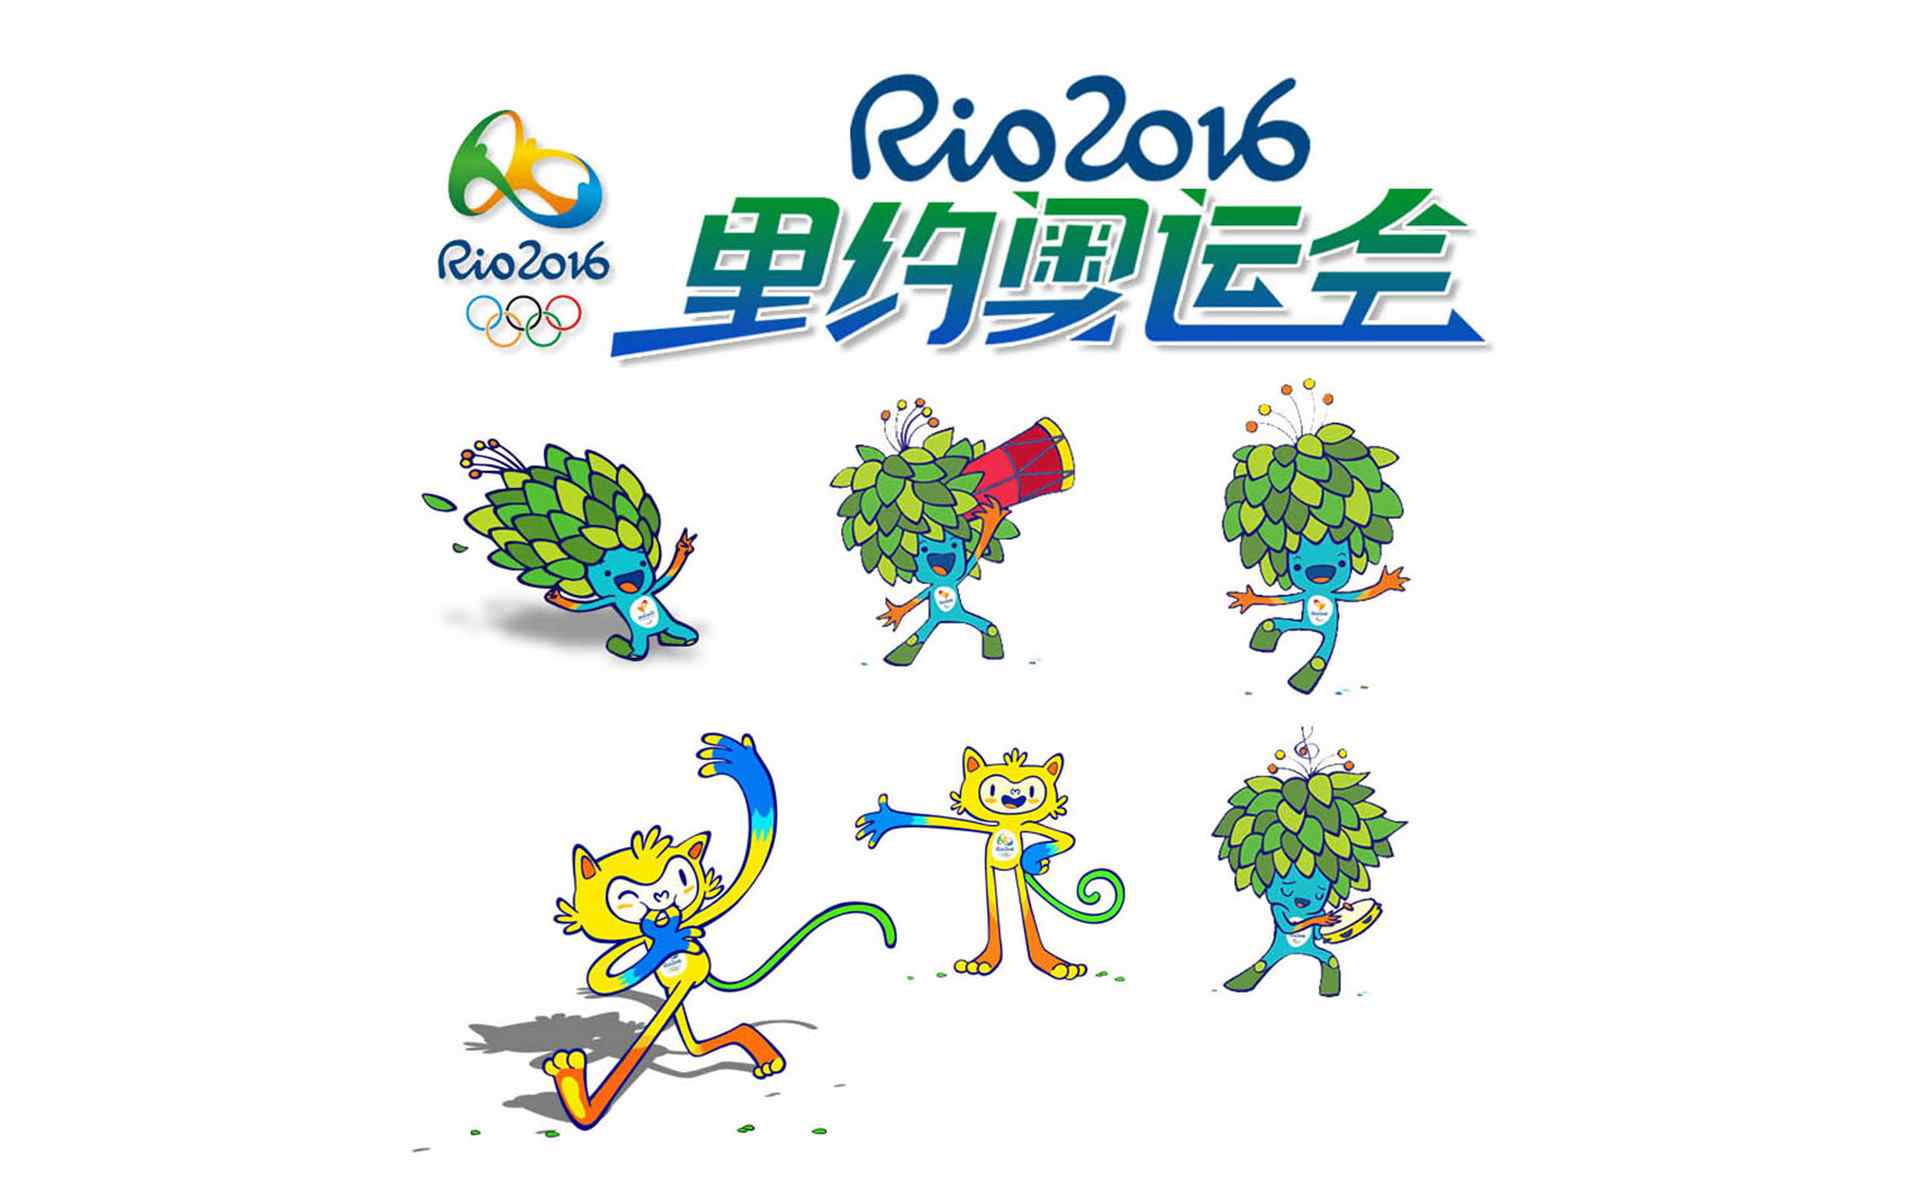 2016年里约奥运会吉祥物平面设计海报素材壁纸